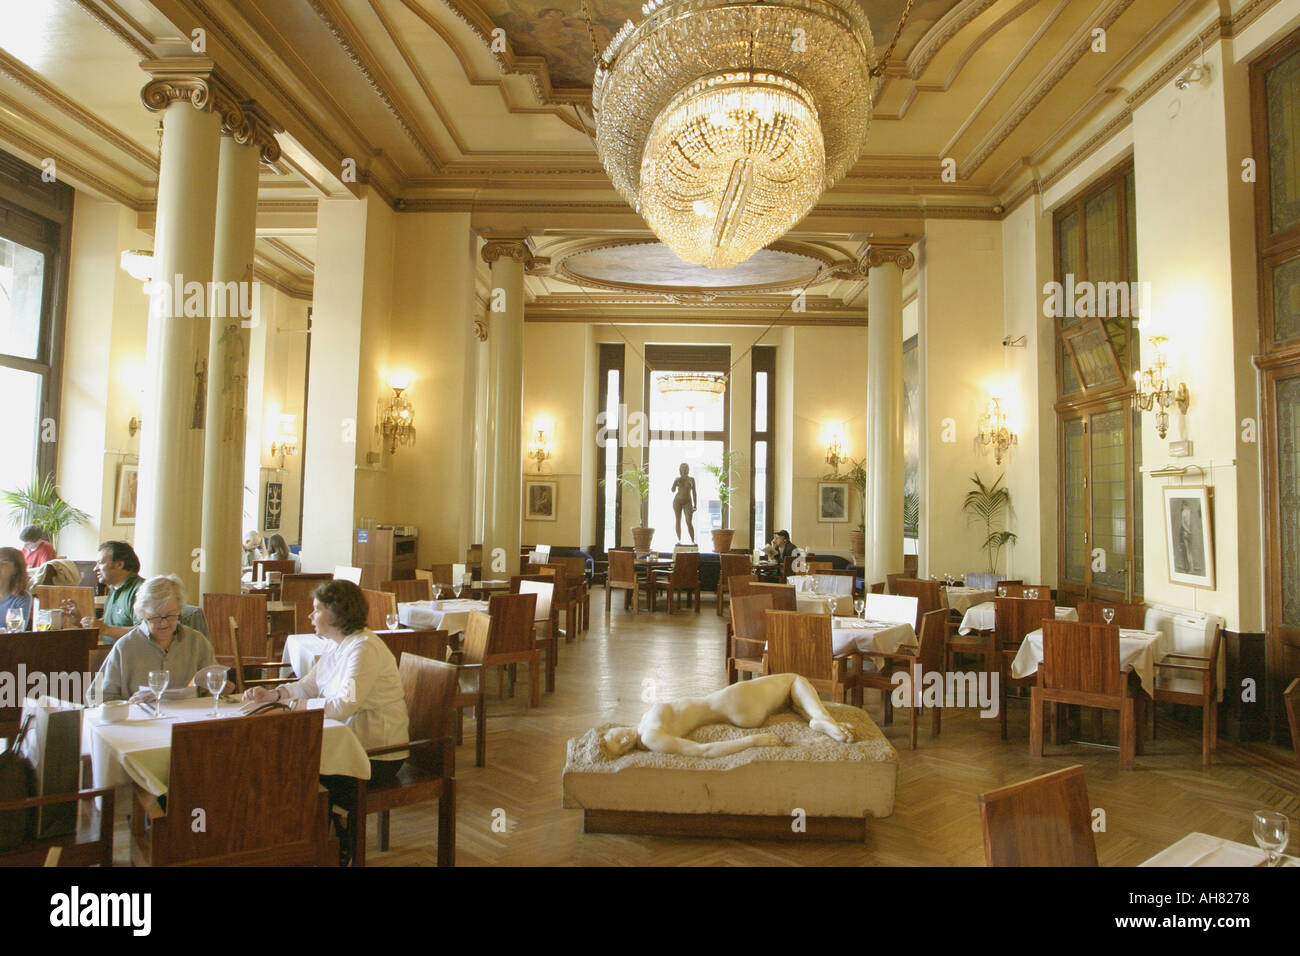 Madrid Spain Circulo de Bellas Artes cafe Stock Photo